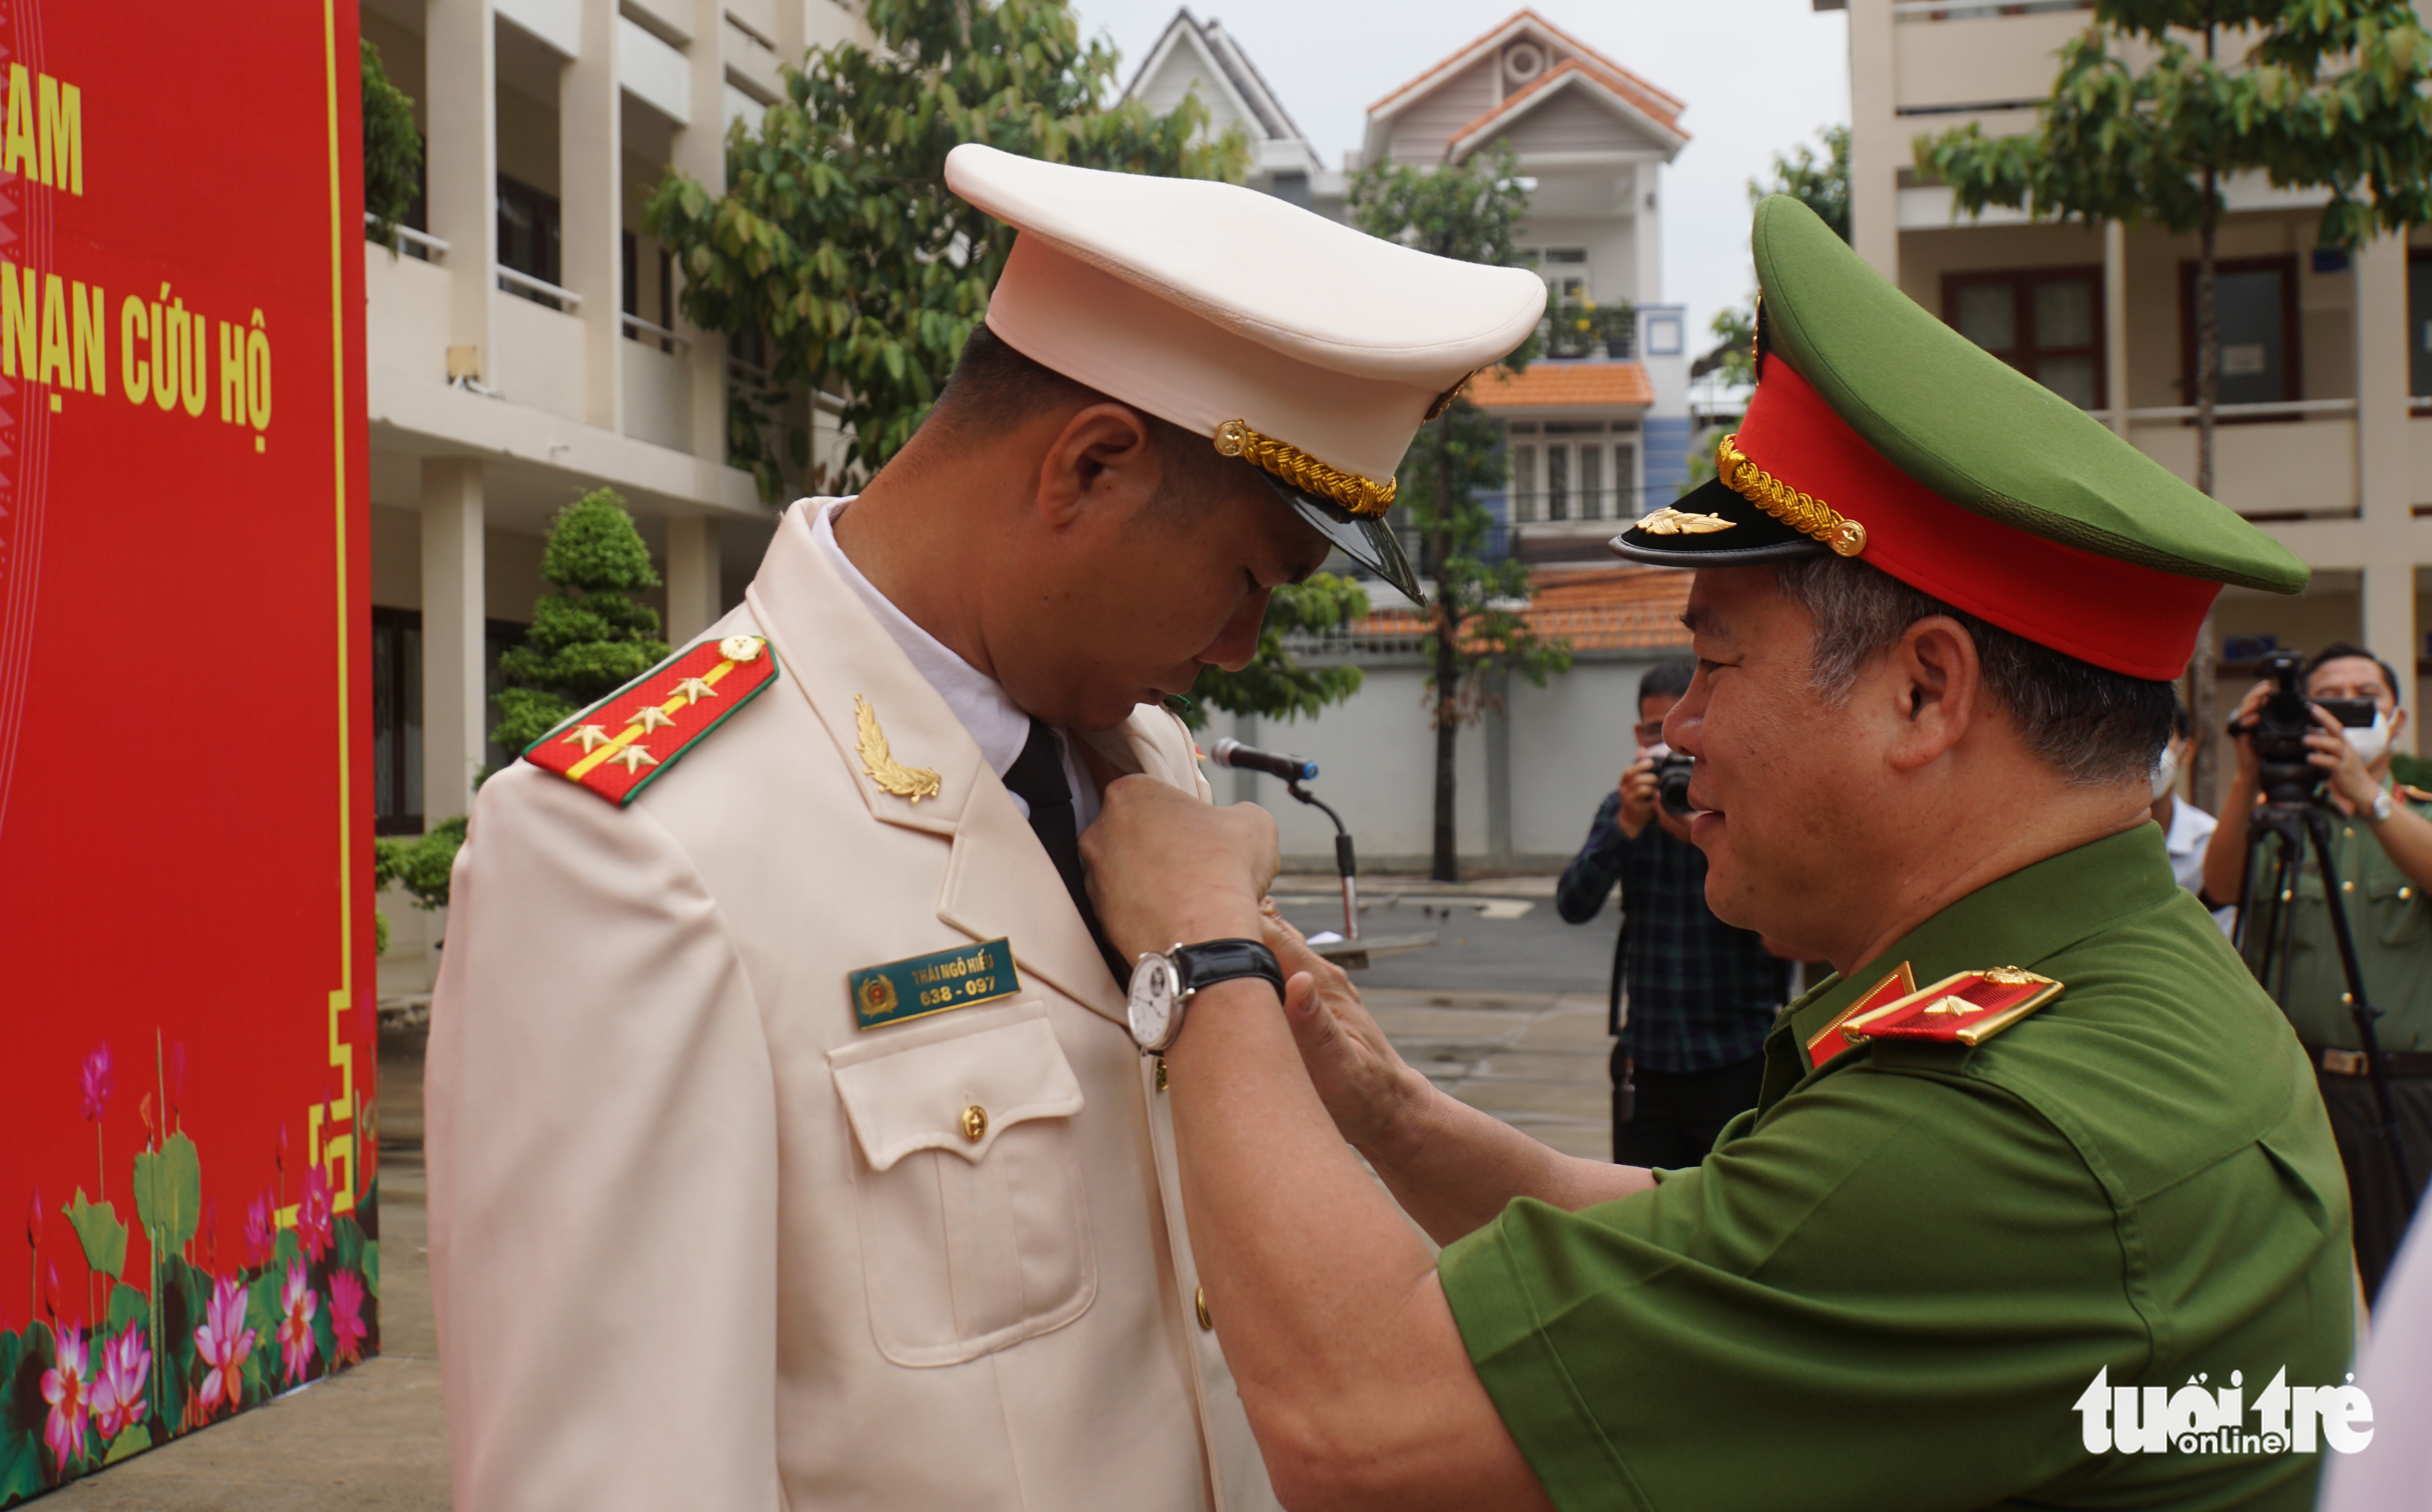 Đại úy Thái Ngô Hiếu cứu sống 4 người nhận Huân chương Dũng cảm